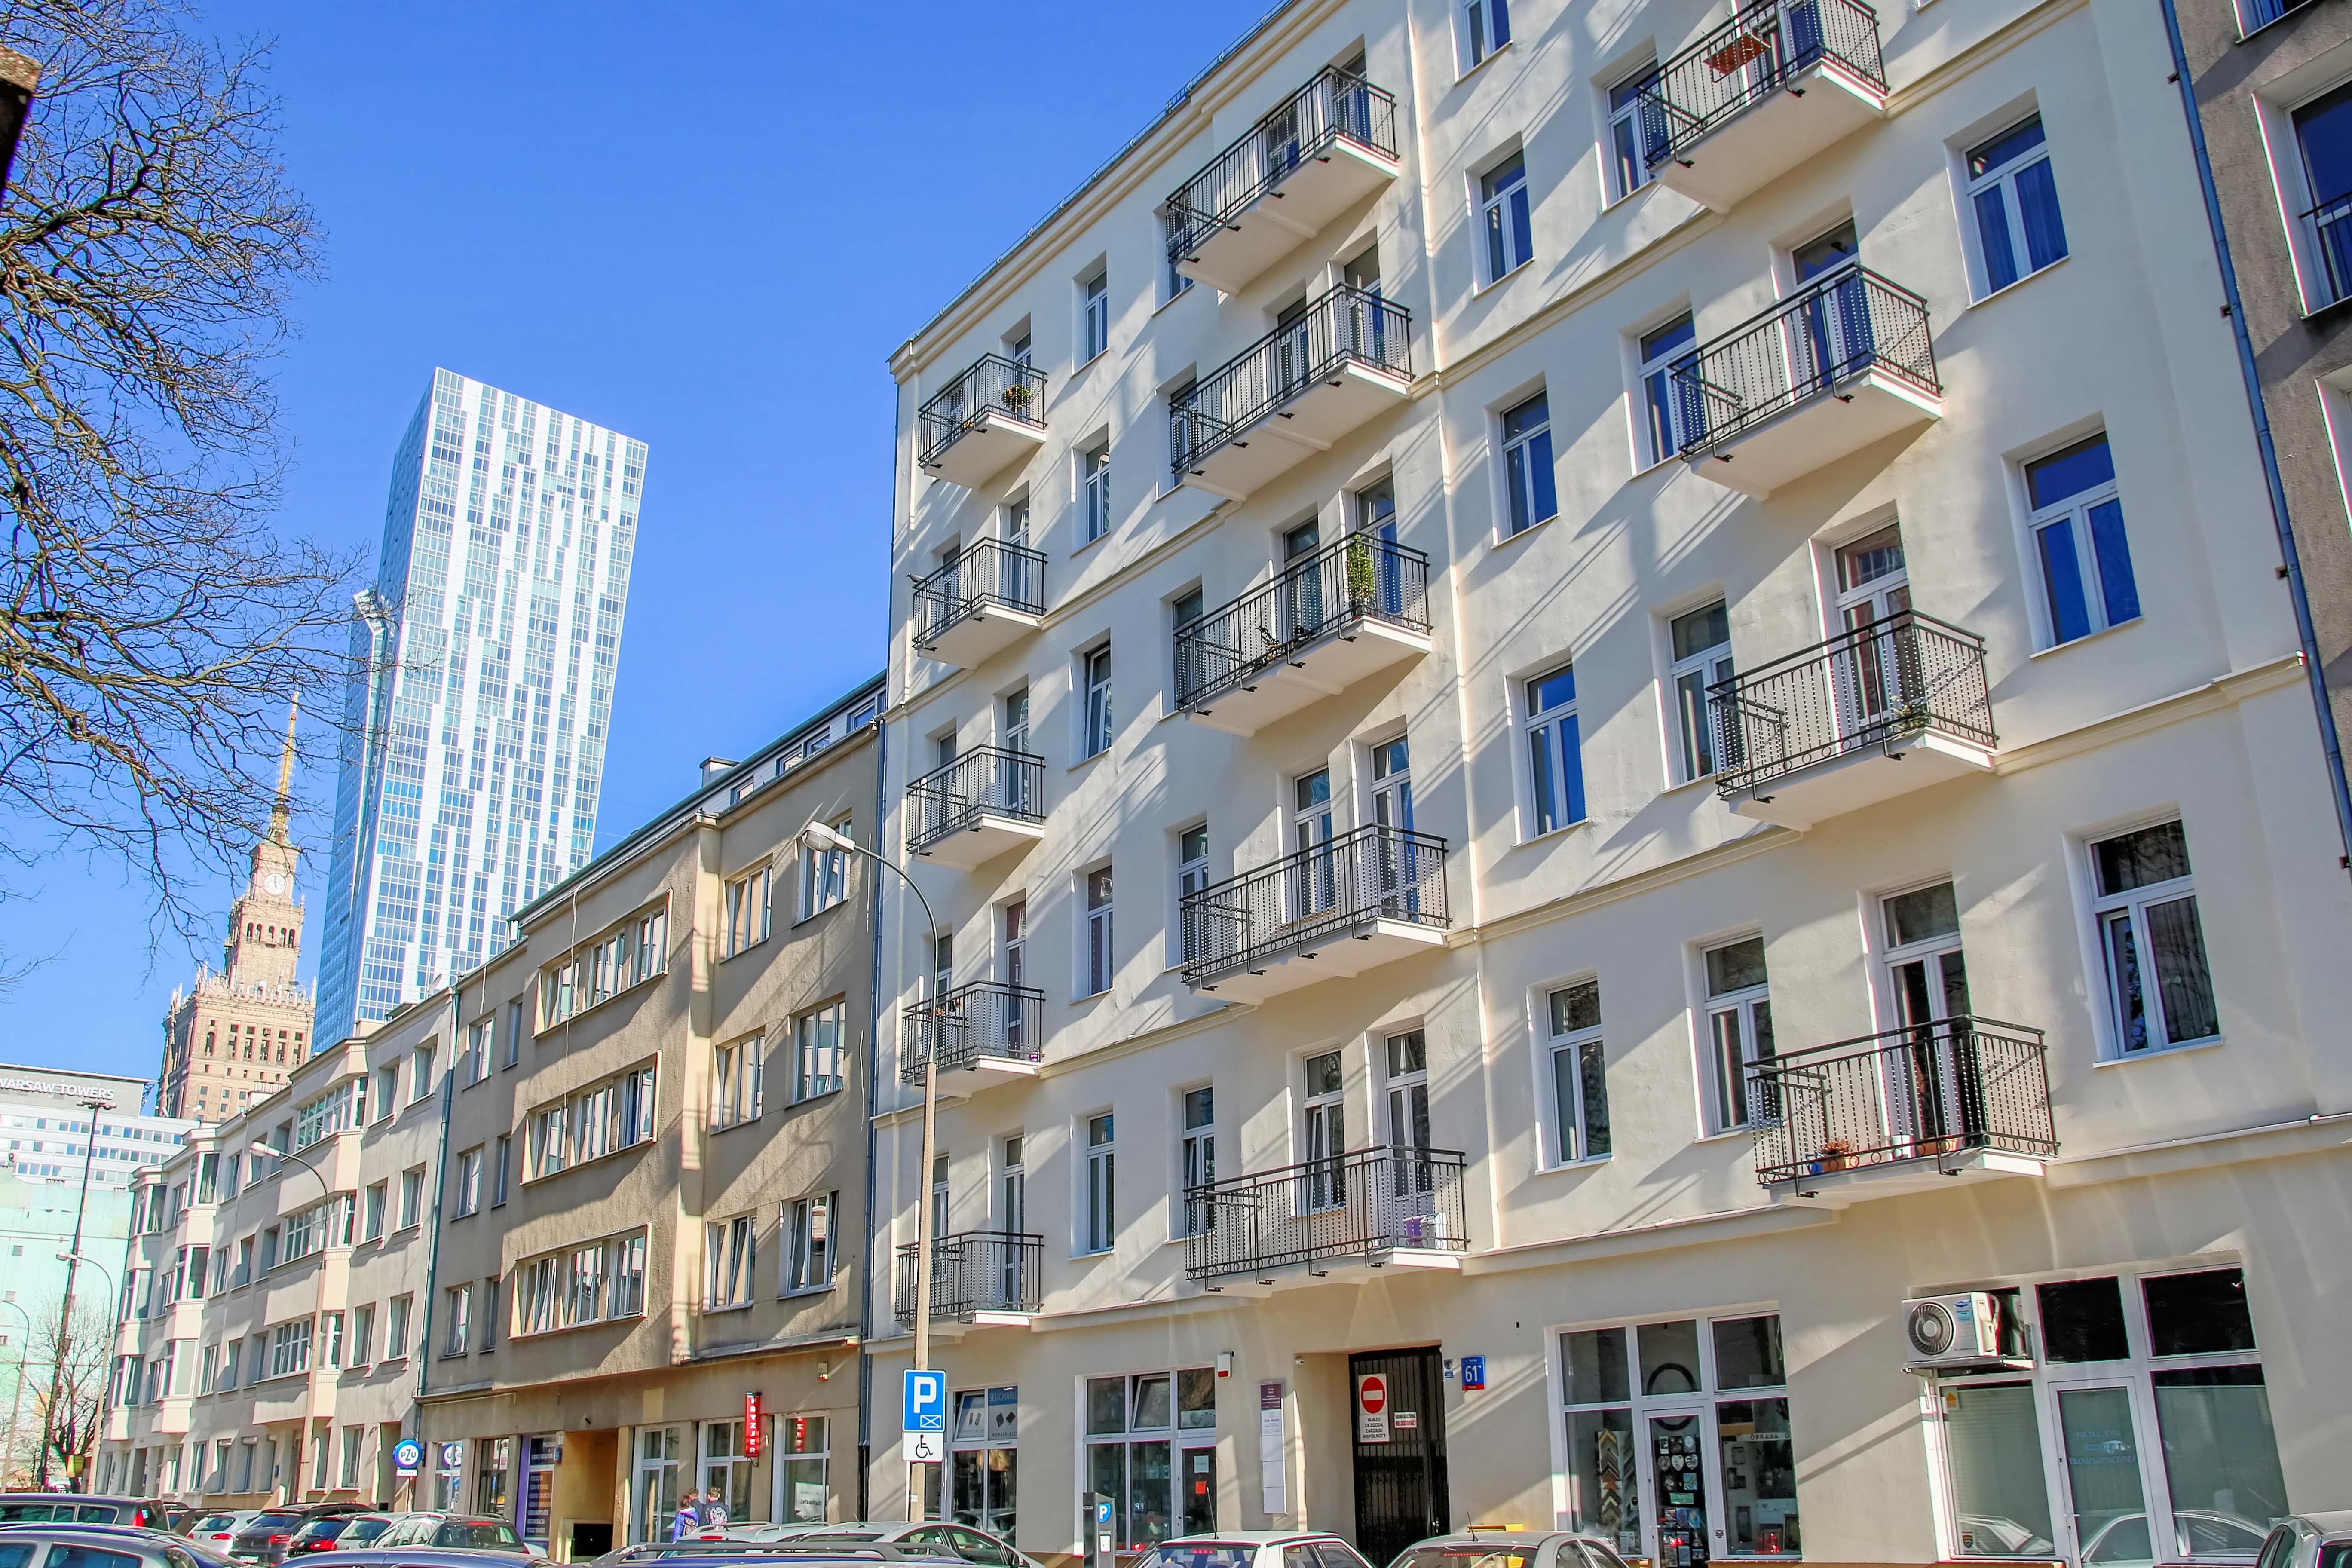 Mieszkanie w centrum Warszawy, z dużym potencjałem inwestycyjnym.